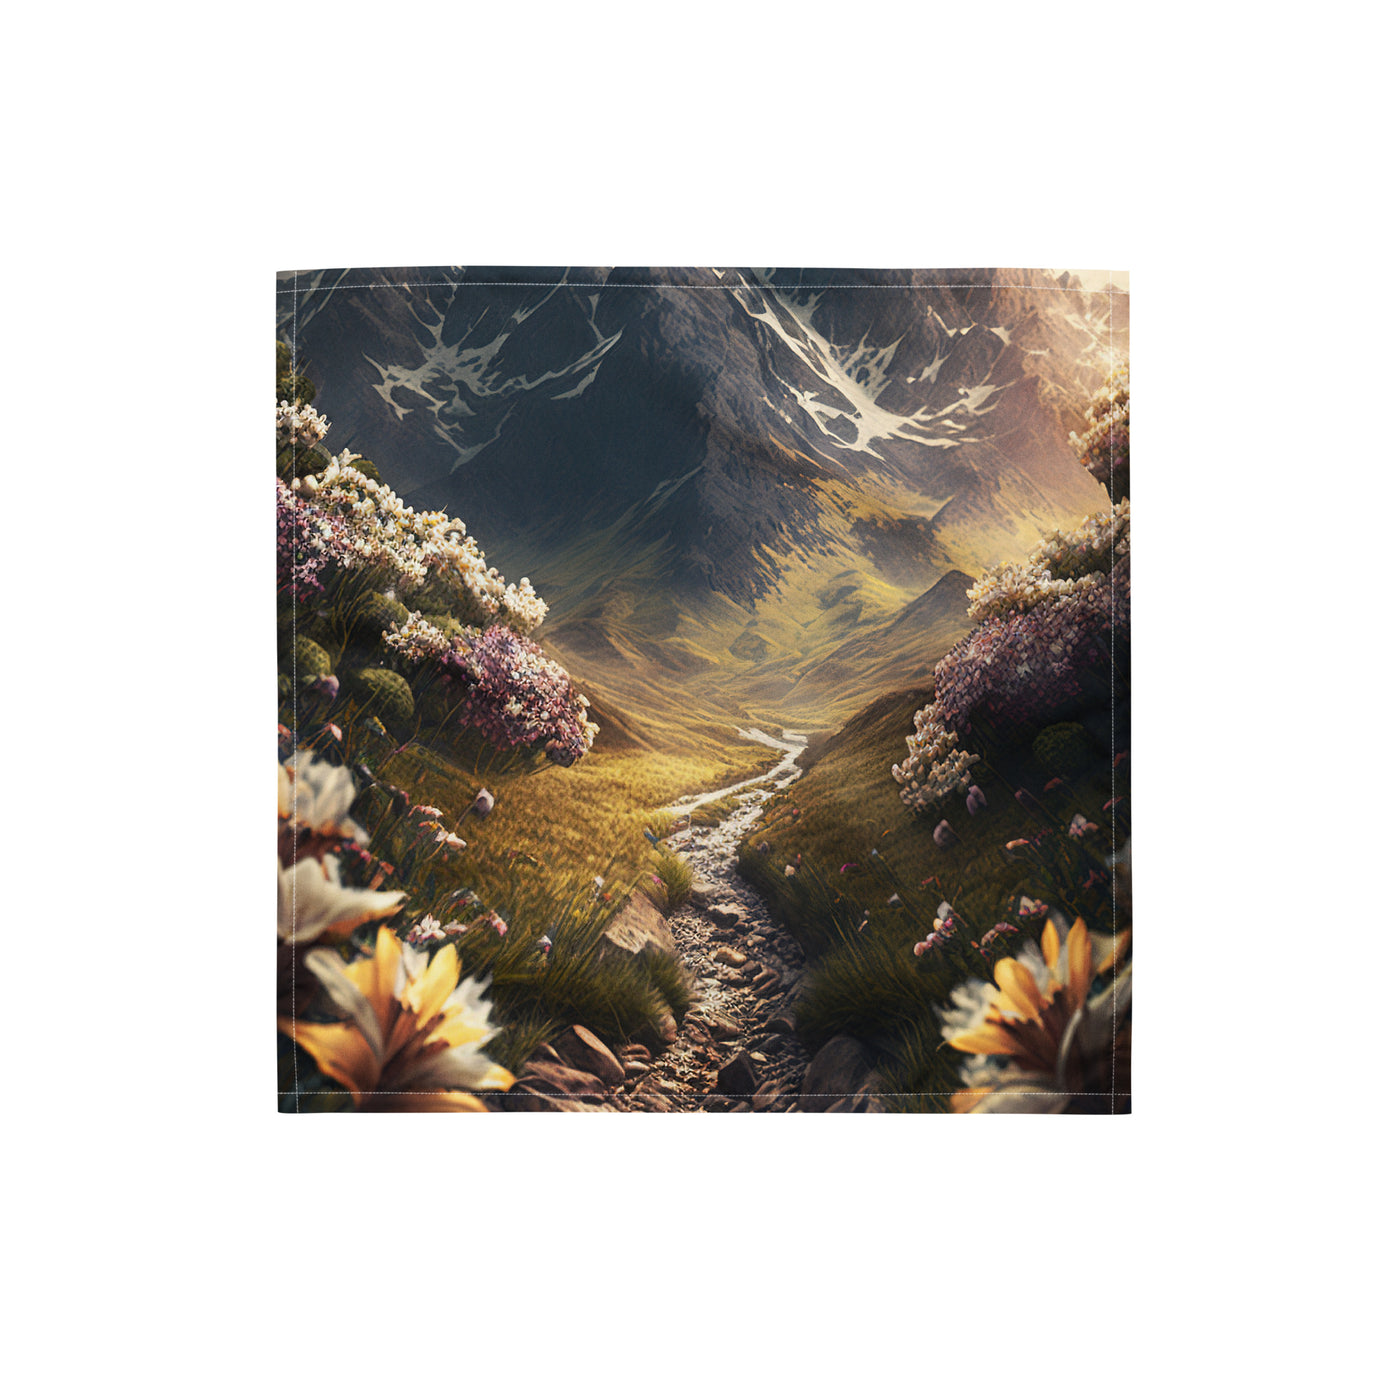 Epischer Berg, steiniger Weg und Blumen - Realistische Malerei - Bandana (All-Over Print) berge xxx S